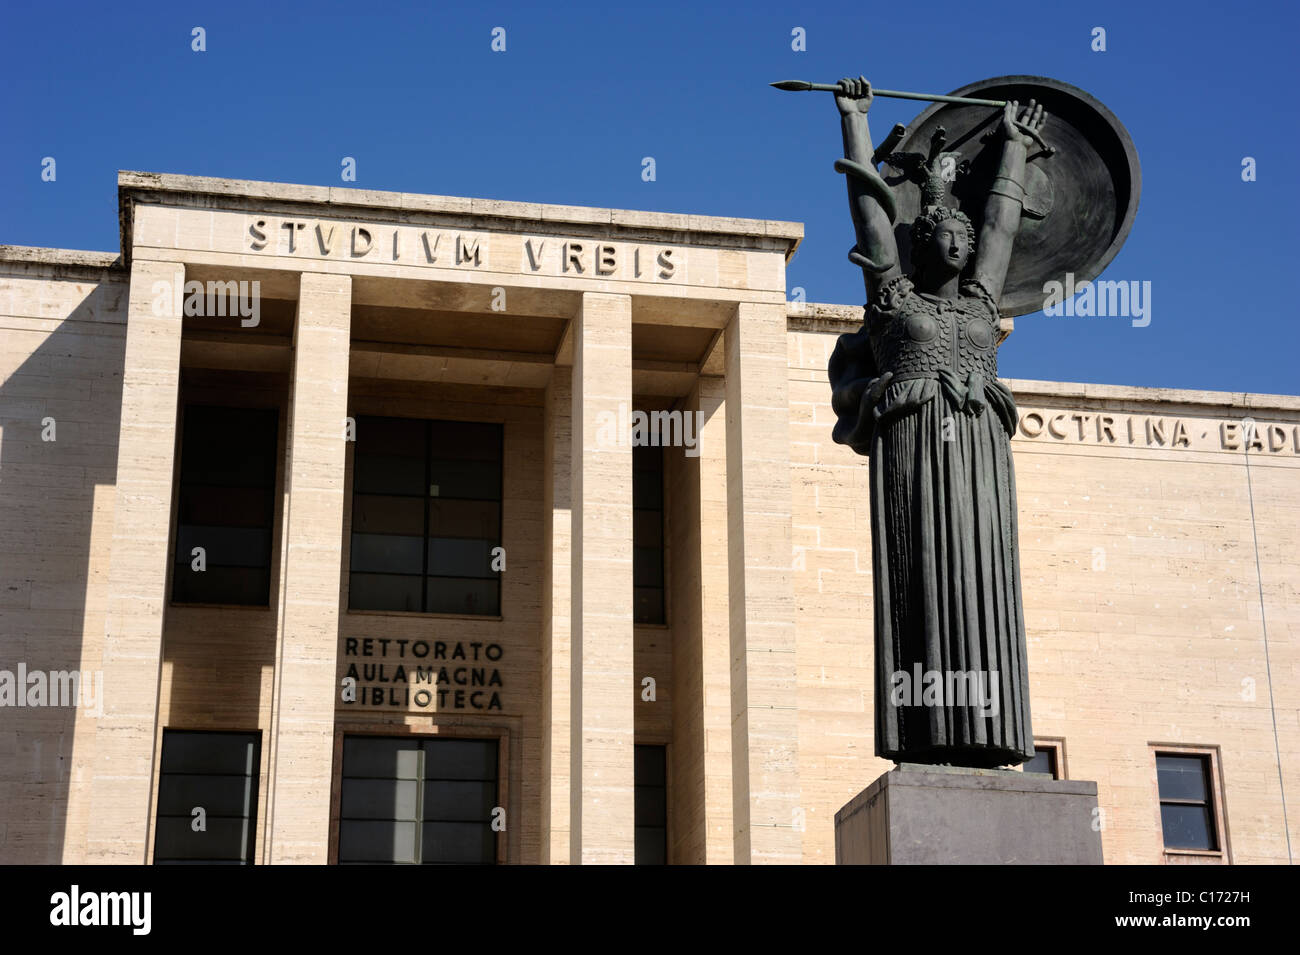 Italy, Rome, La Sapienza University, Minerva statue and Palazzo del Rettorato Stock Photo